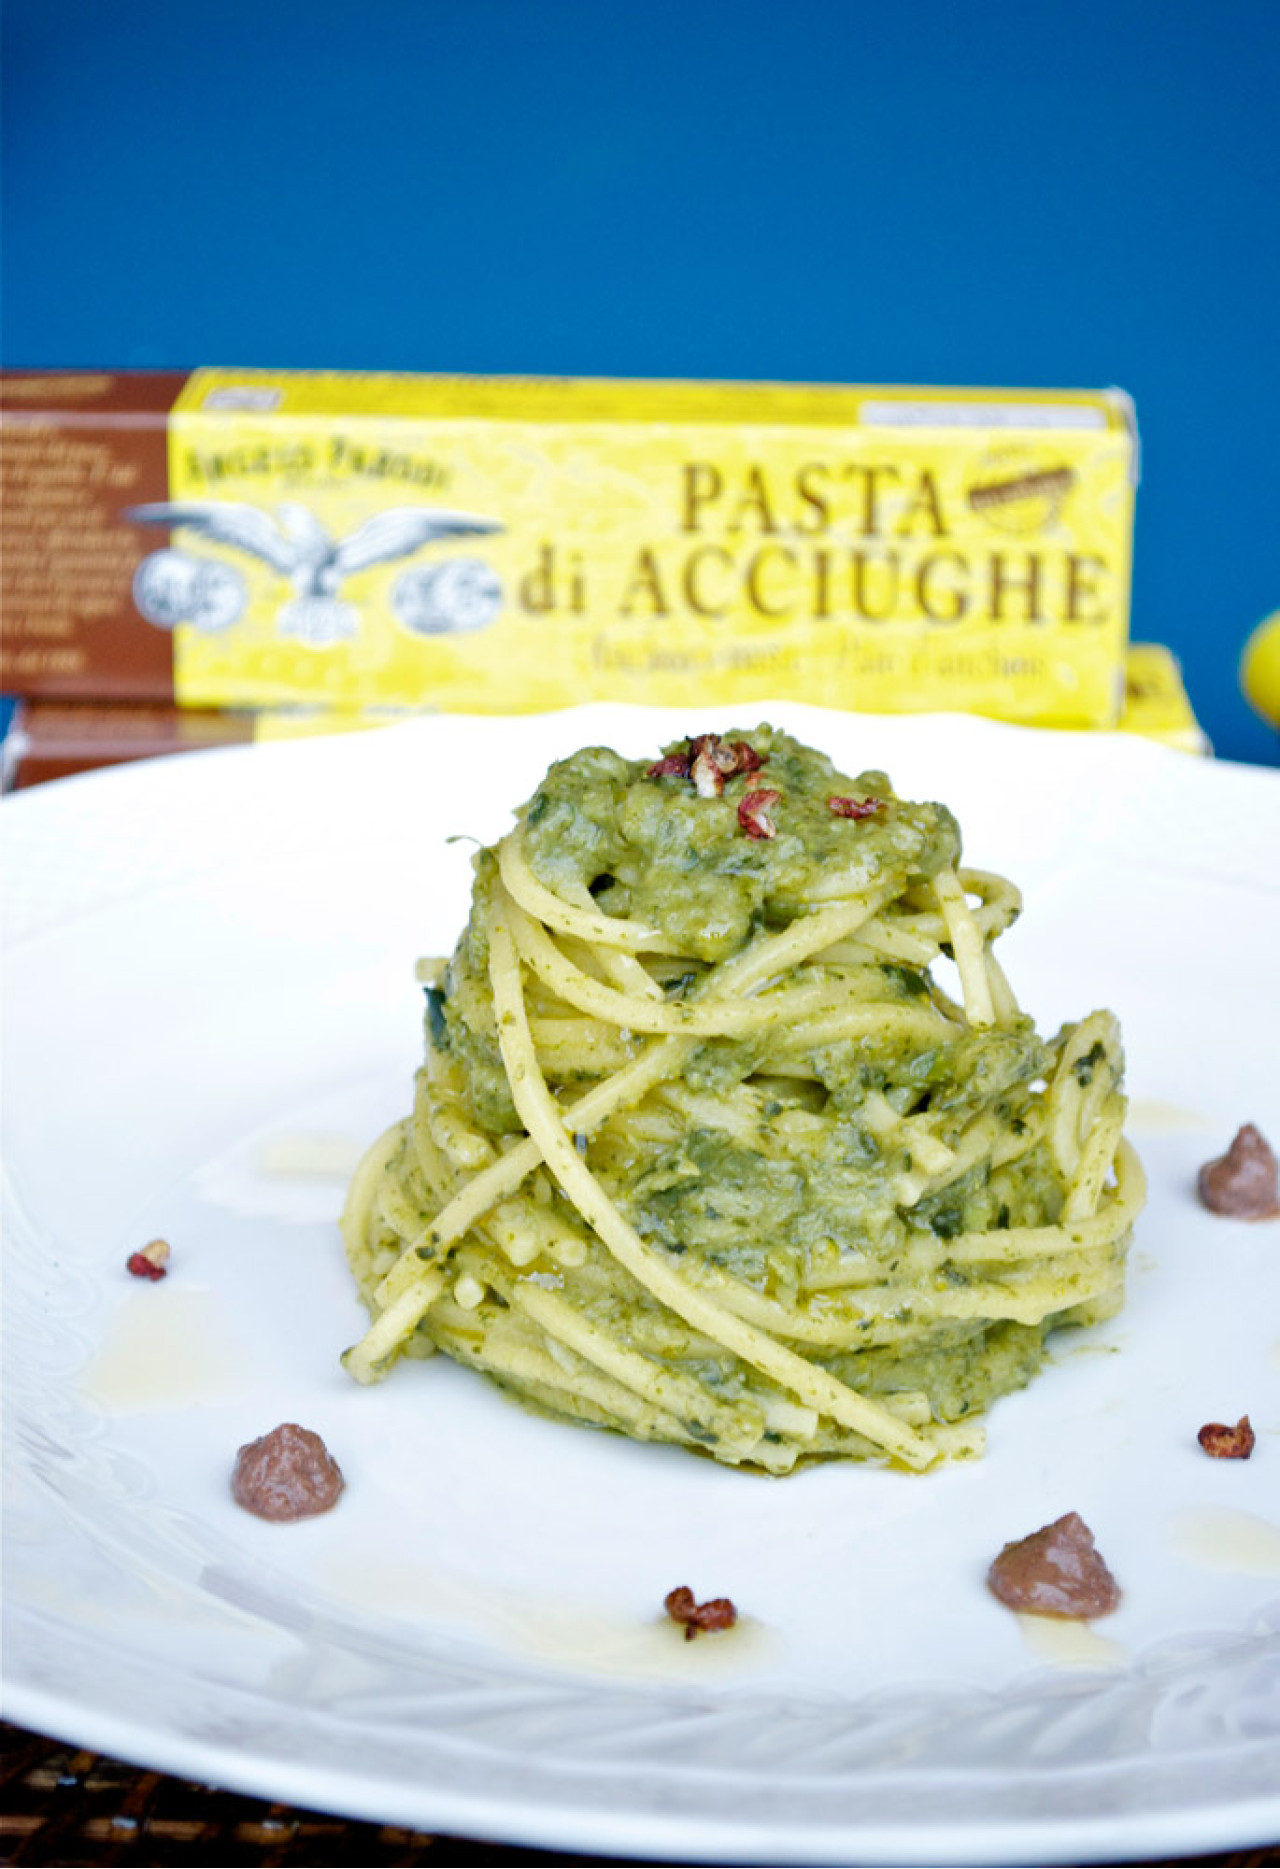 Spaghetti alla chitarra con crema di broccoli, Pasta di Acciughe Angelo Parodi e pepe di Sichuan